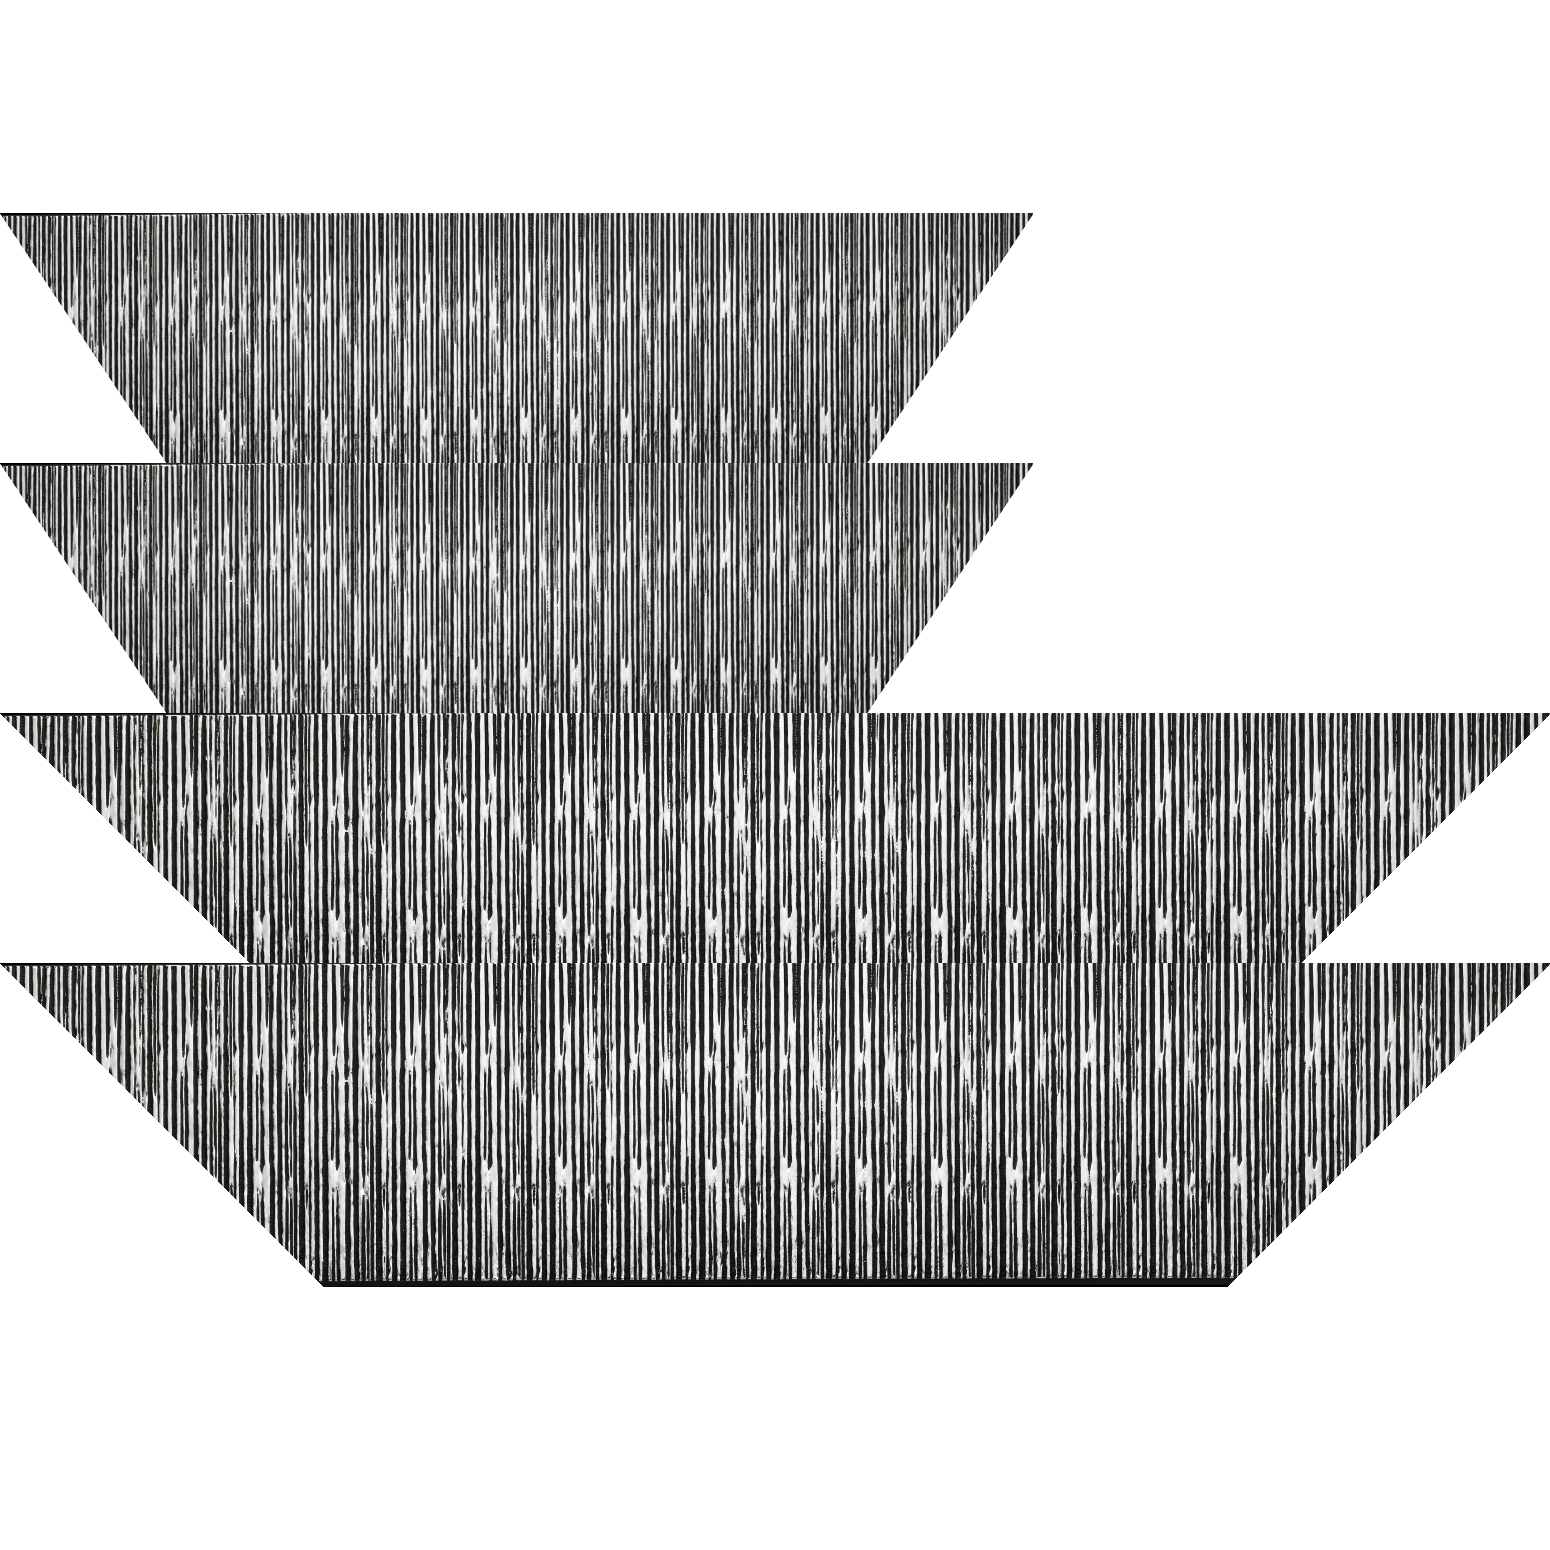 Baguette bois profil plat largeur 10.5cm couleur noir mat strié argent chromé en relief - 84.1x118.9